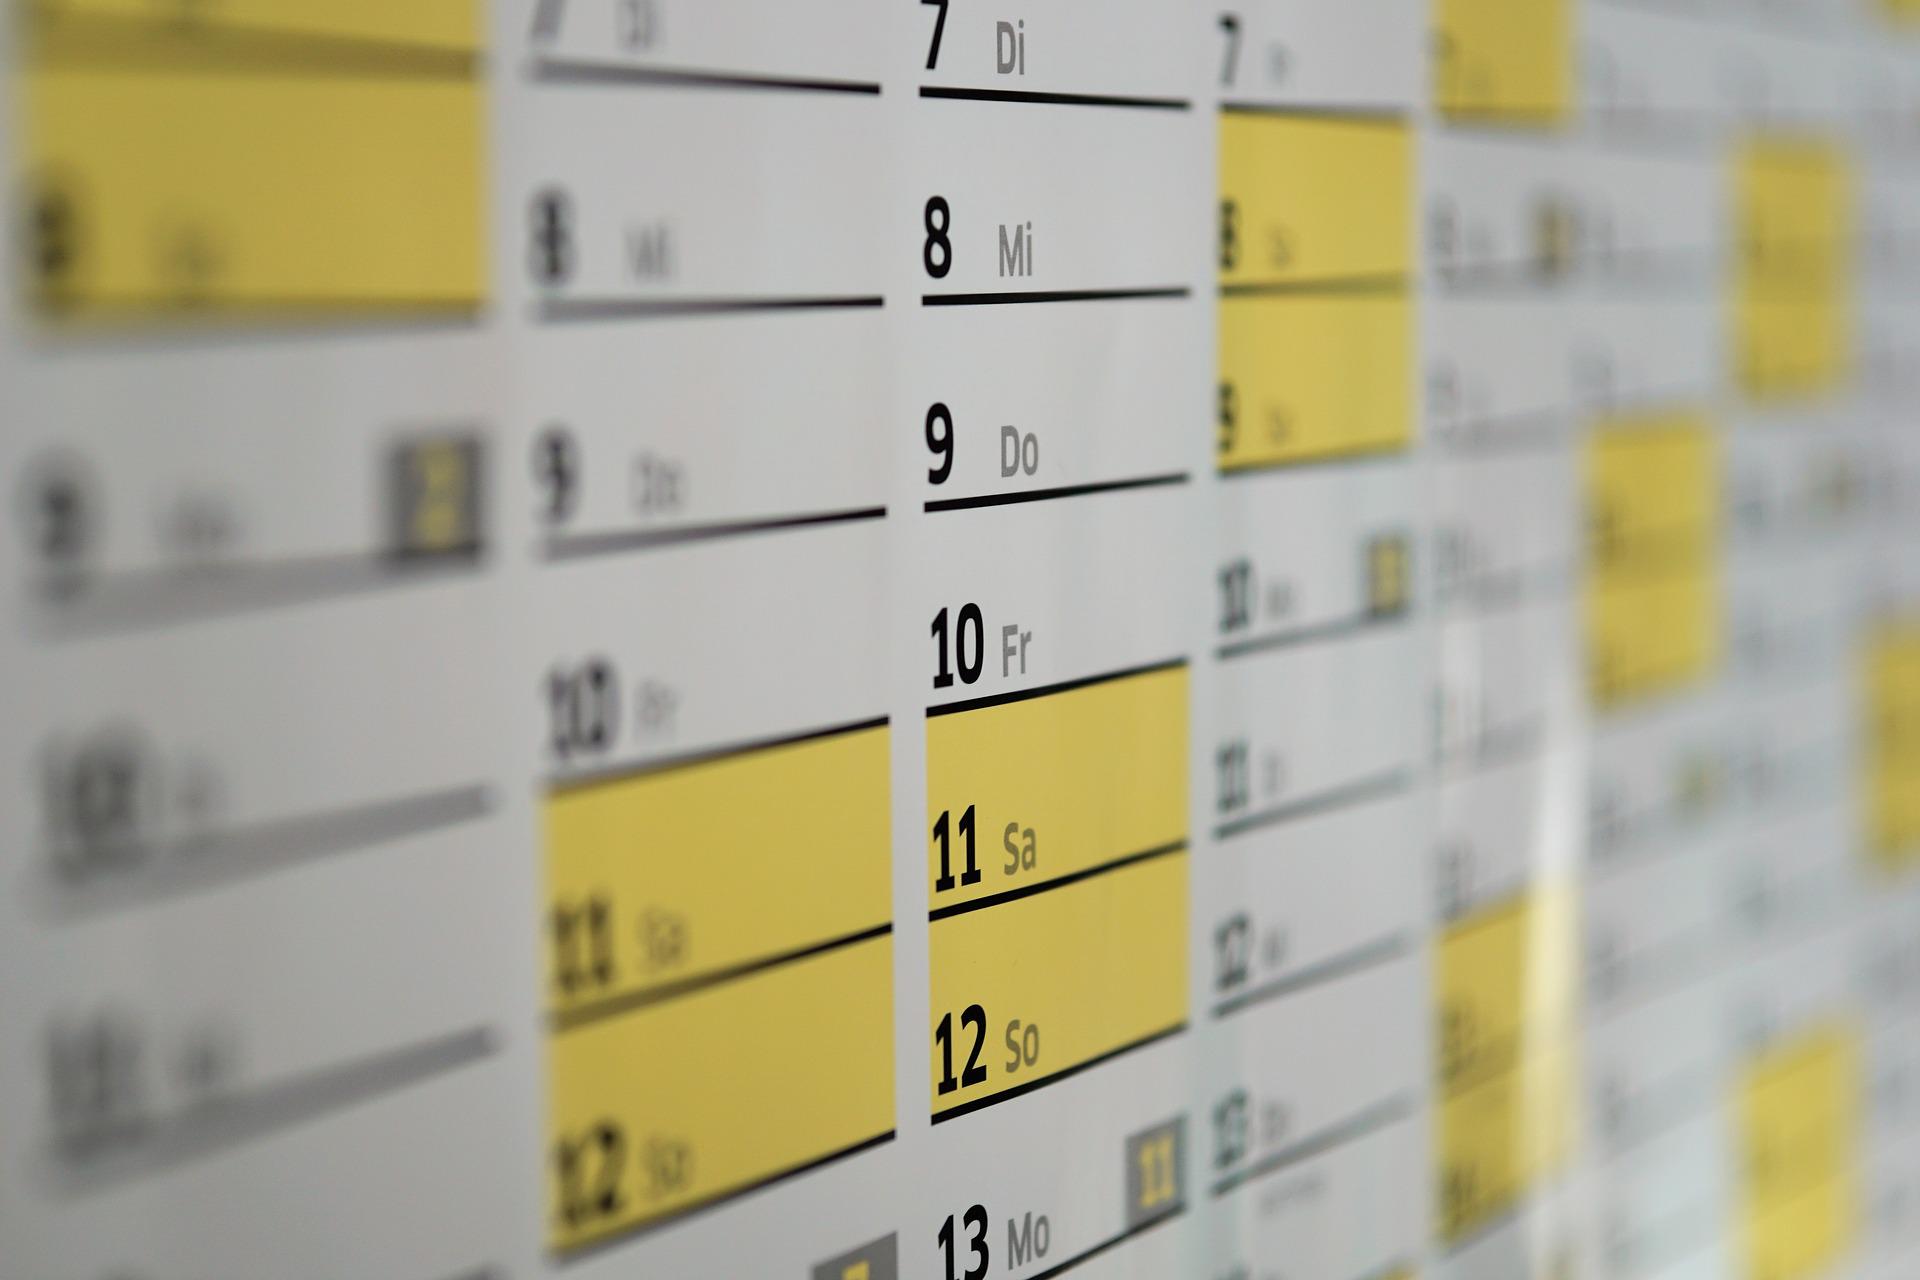 Dlaczego warto korzystać z internetowego kalendarza? Nextvisit System rezerwacji wizyt z płatnościami online